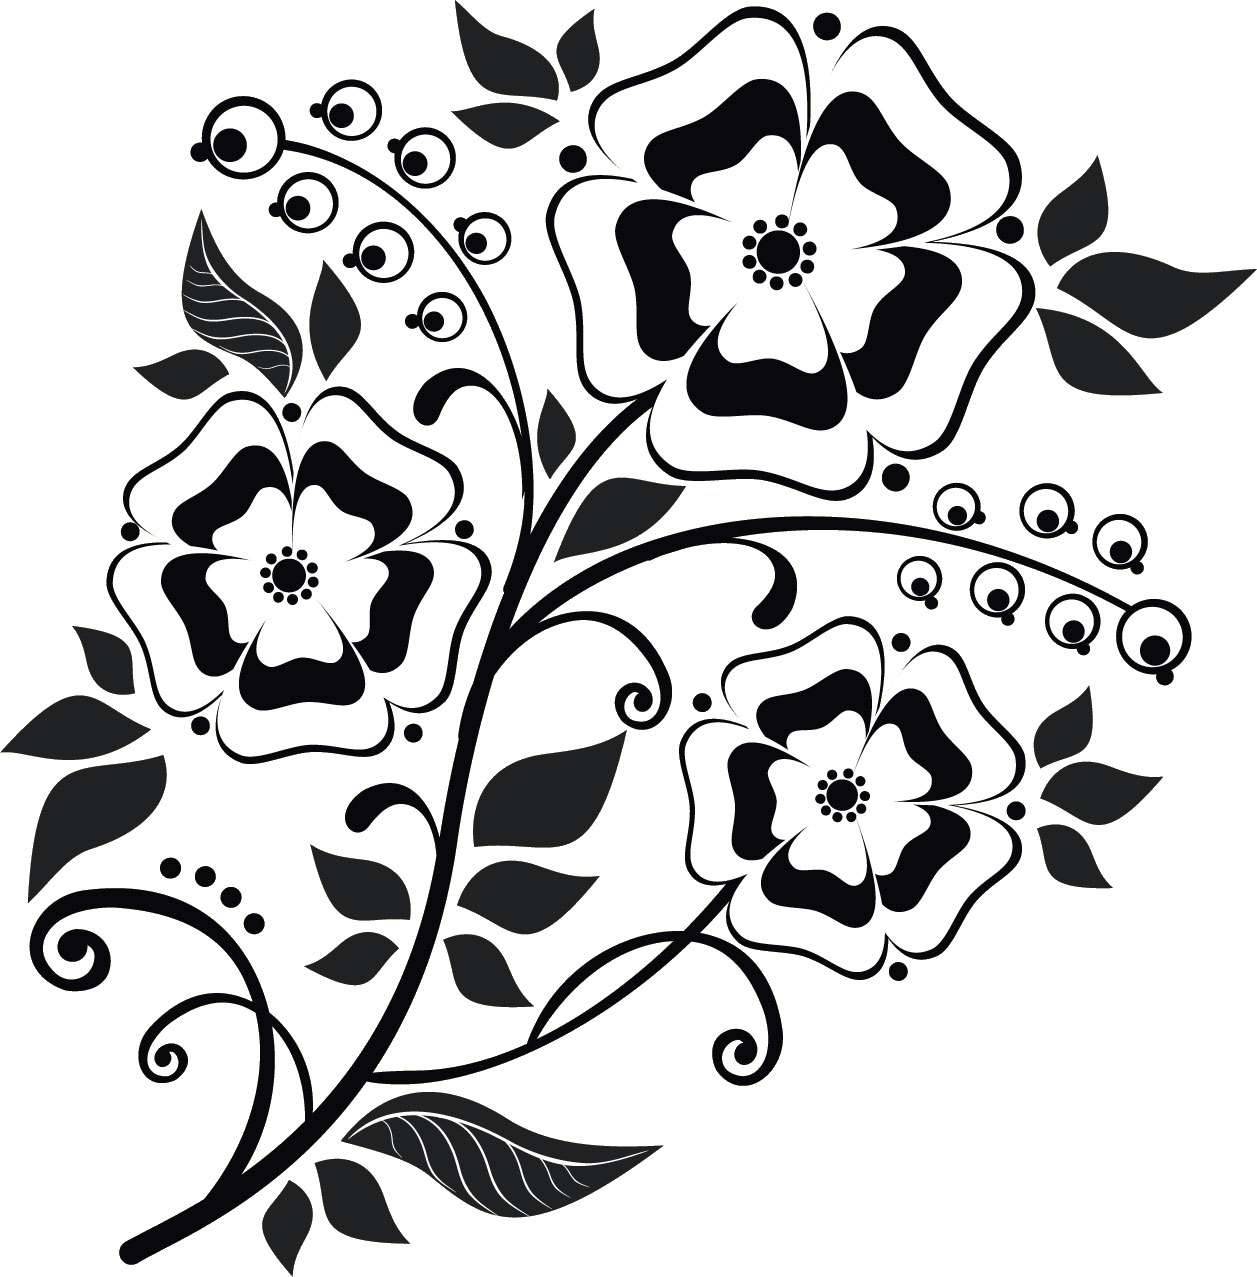 花のイラスト フリー素材 白黒 モノクロno 396 白黒 パンジー風